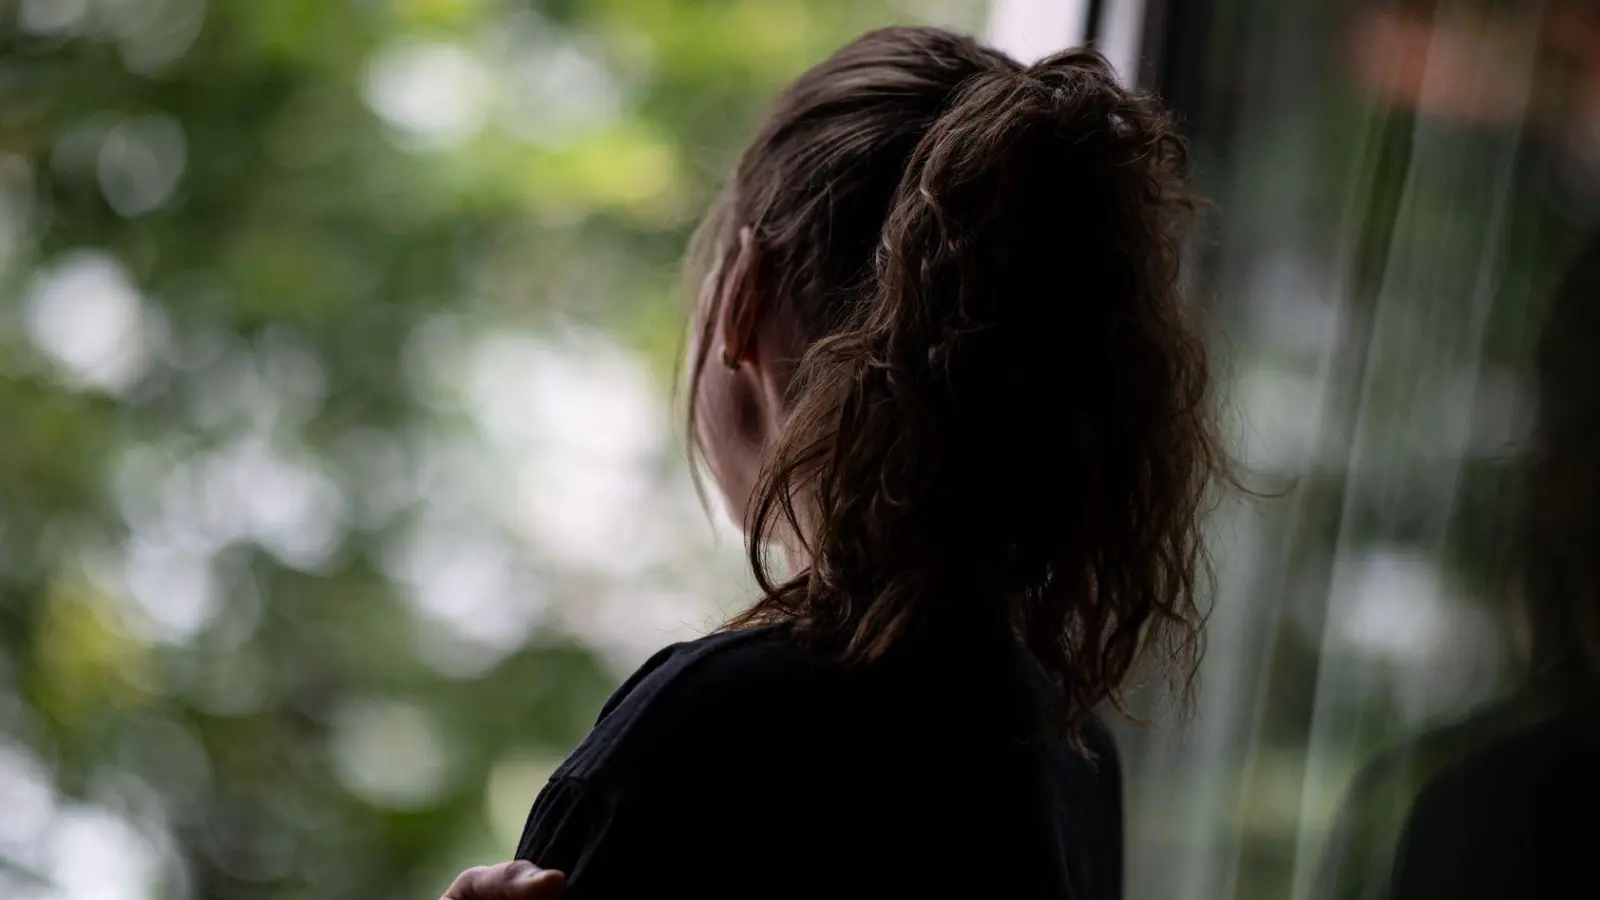 Eine Jugendliche steht gedankenversunken am Fenster. Selbstverletzendes Verhalten kann vorübergehend negative Gefühle verdrängen. (Foto: Fabian Sommer/dpa/dpa-tmn)